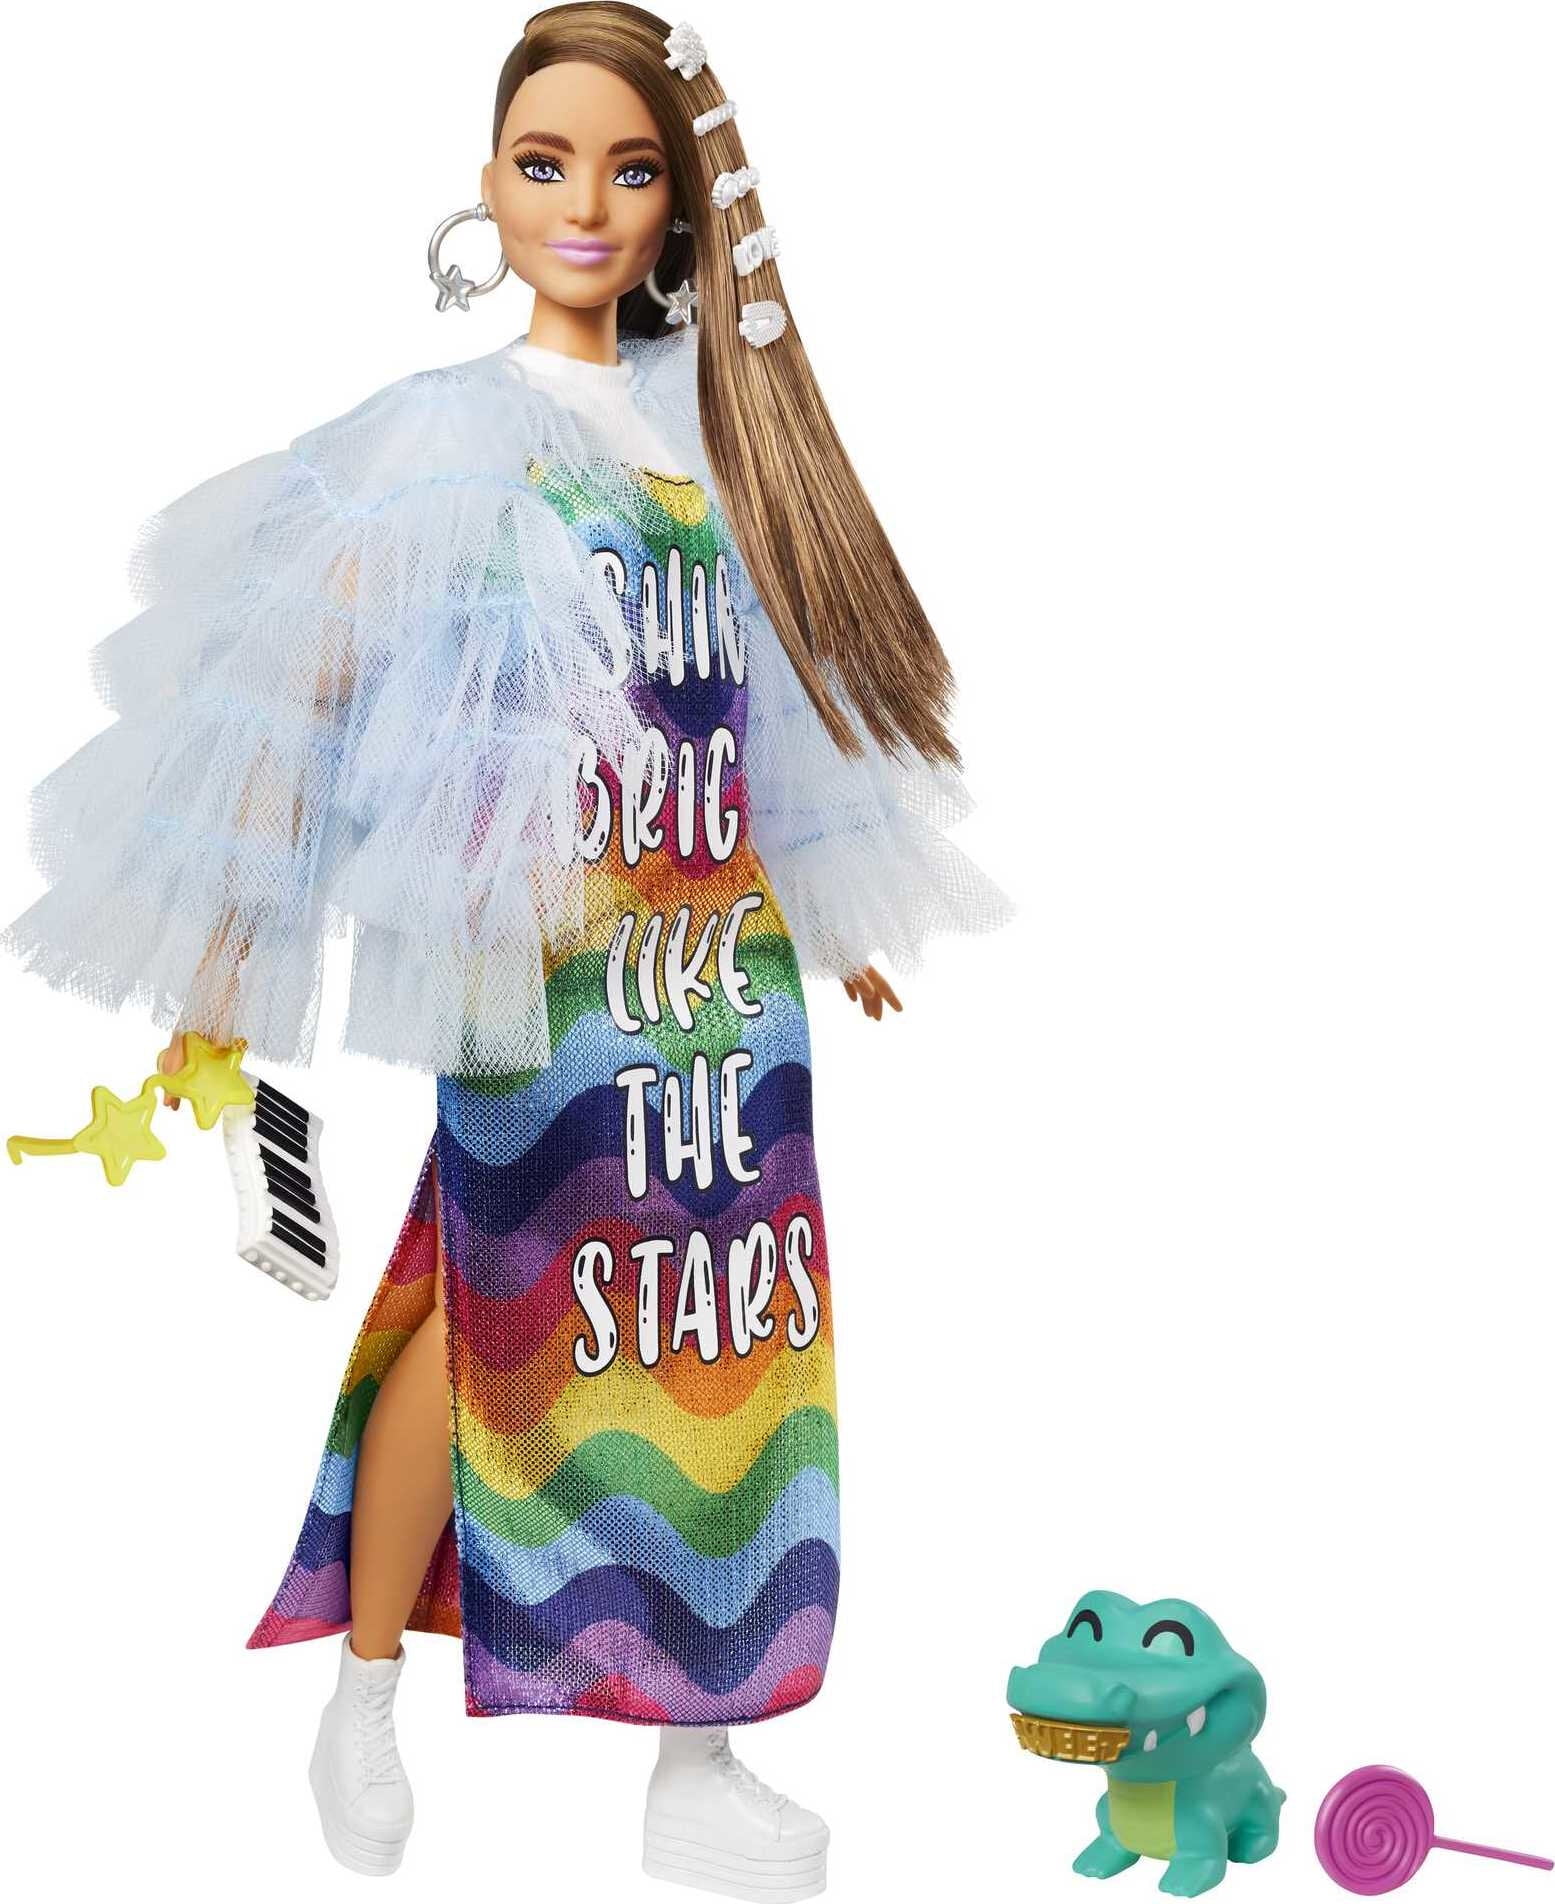 BARBIE EXTRA #5 (Fringe Denim, AA w Rainbow Braids) Barbie Doll